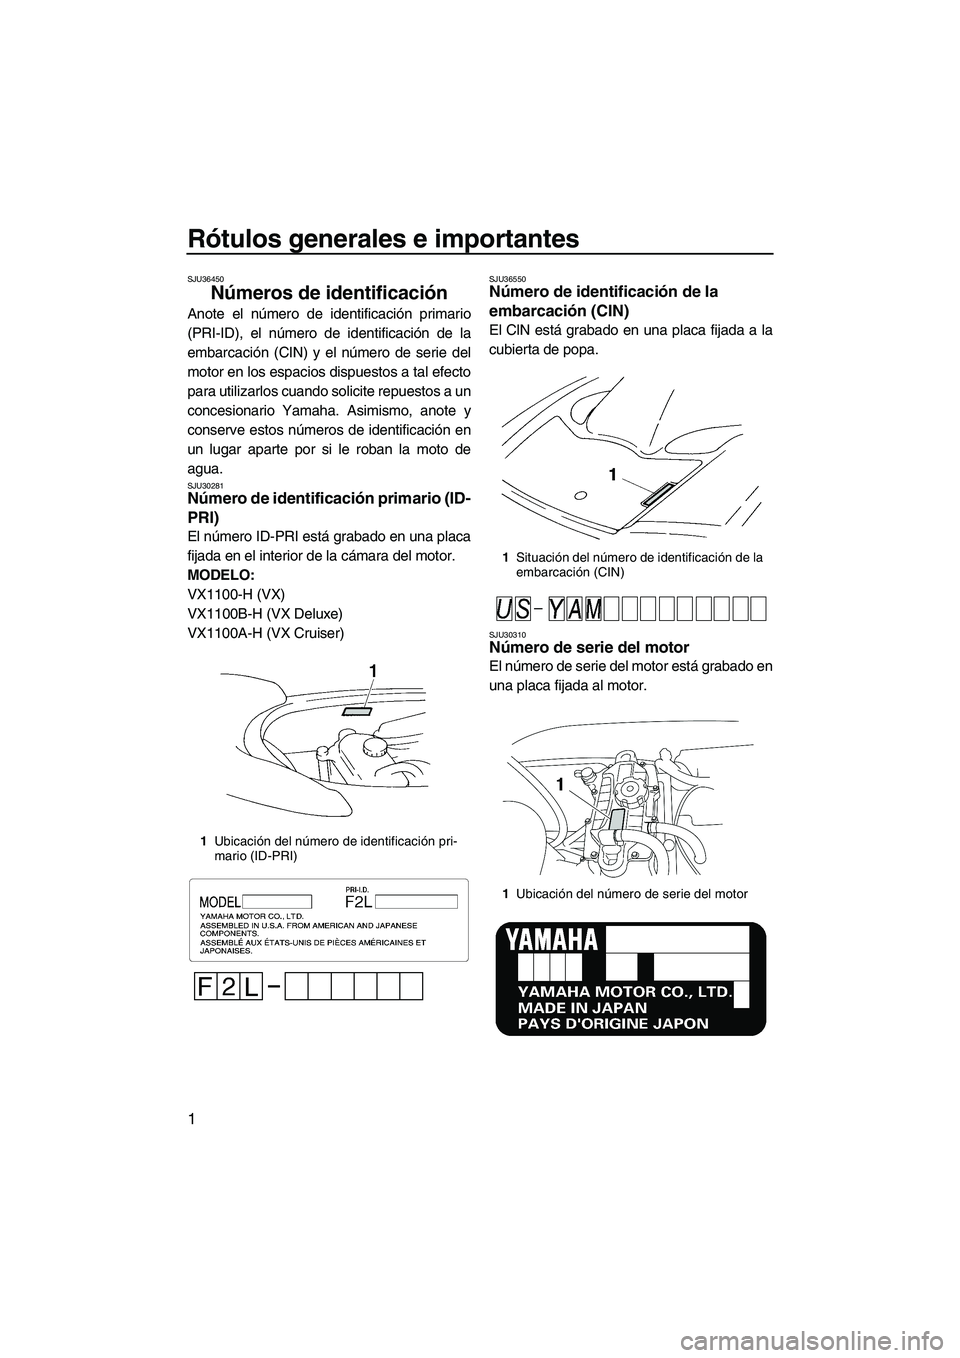 YAMAHA VX 2009  Manuale de Empleo (in Spanish) Rótulos generales e importantes
1
SJU36450
Números de identificación 
Anote el número de identificación primario
(PRI-ID), el número de identificación de la
embarcación (CIN) y el número de s